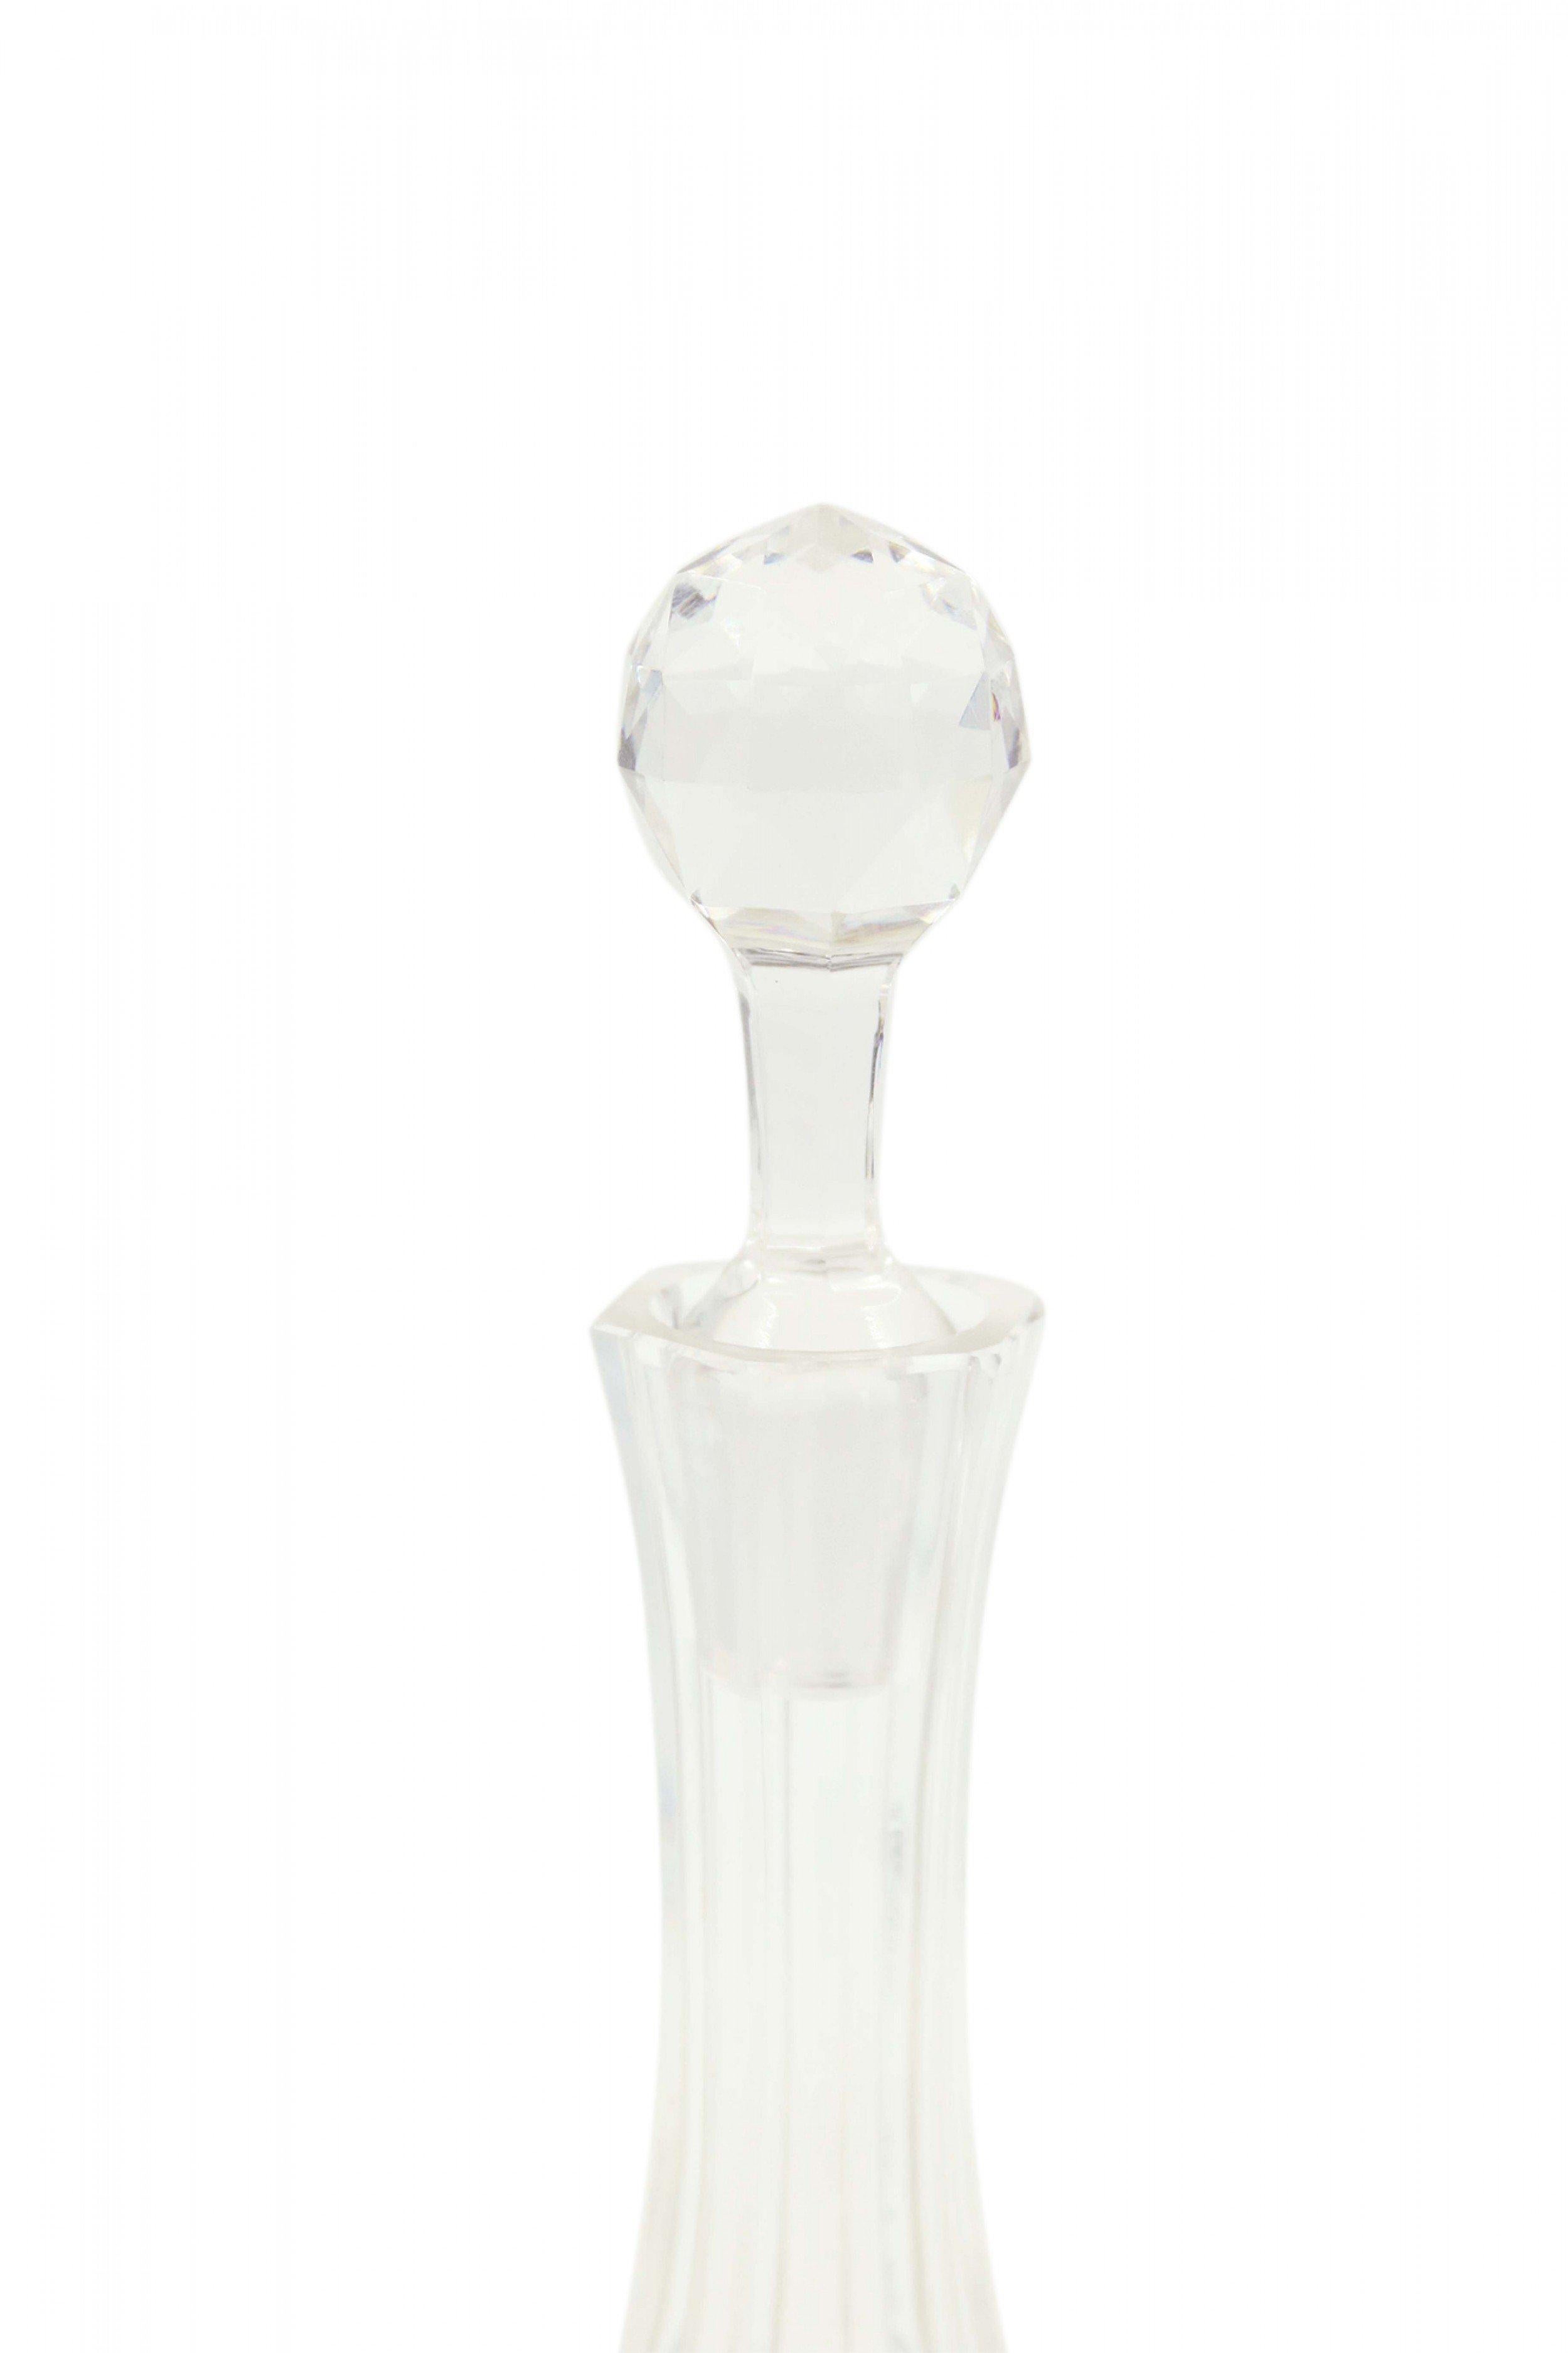 Carafe en cristal taillé de style victorien anglais avec un long col et une base bulbeuse avec un bouchon à facettes attenant.
  